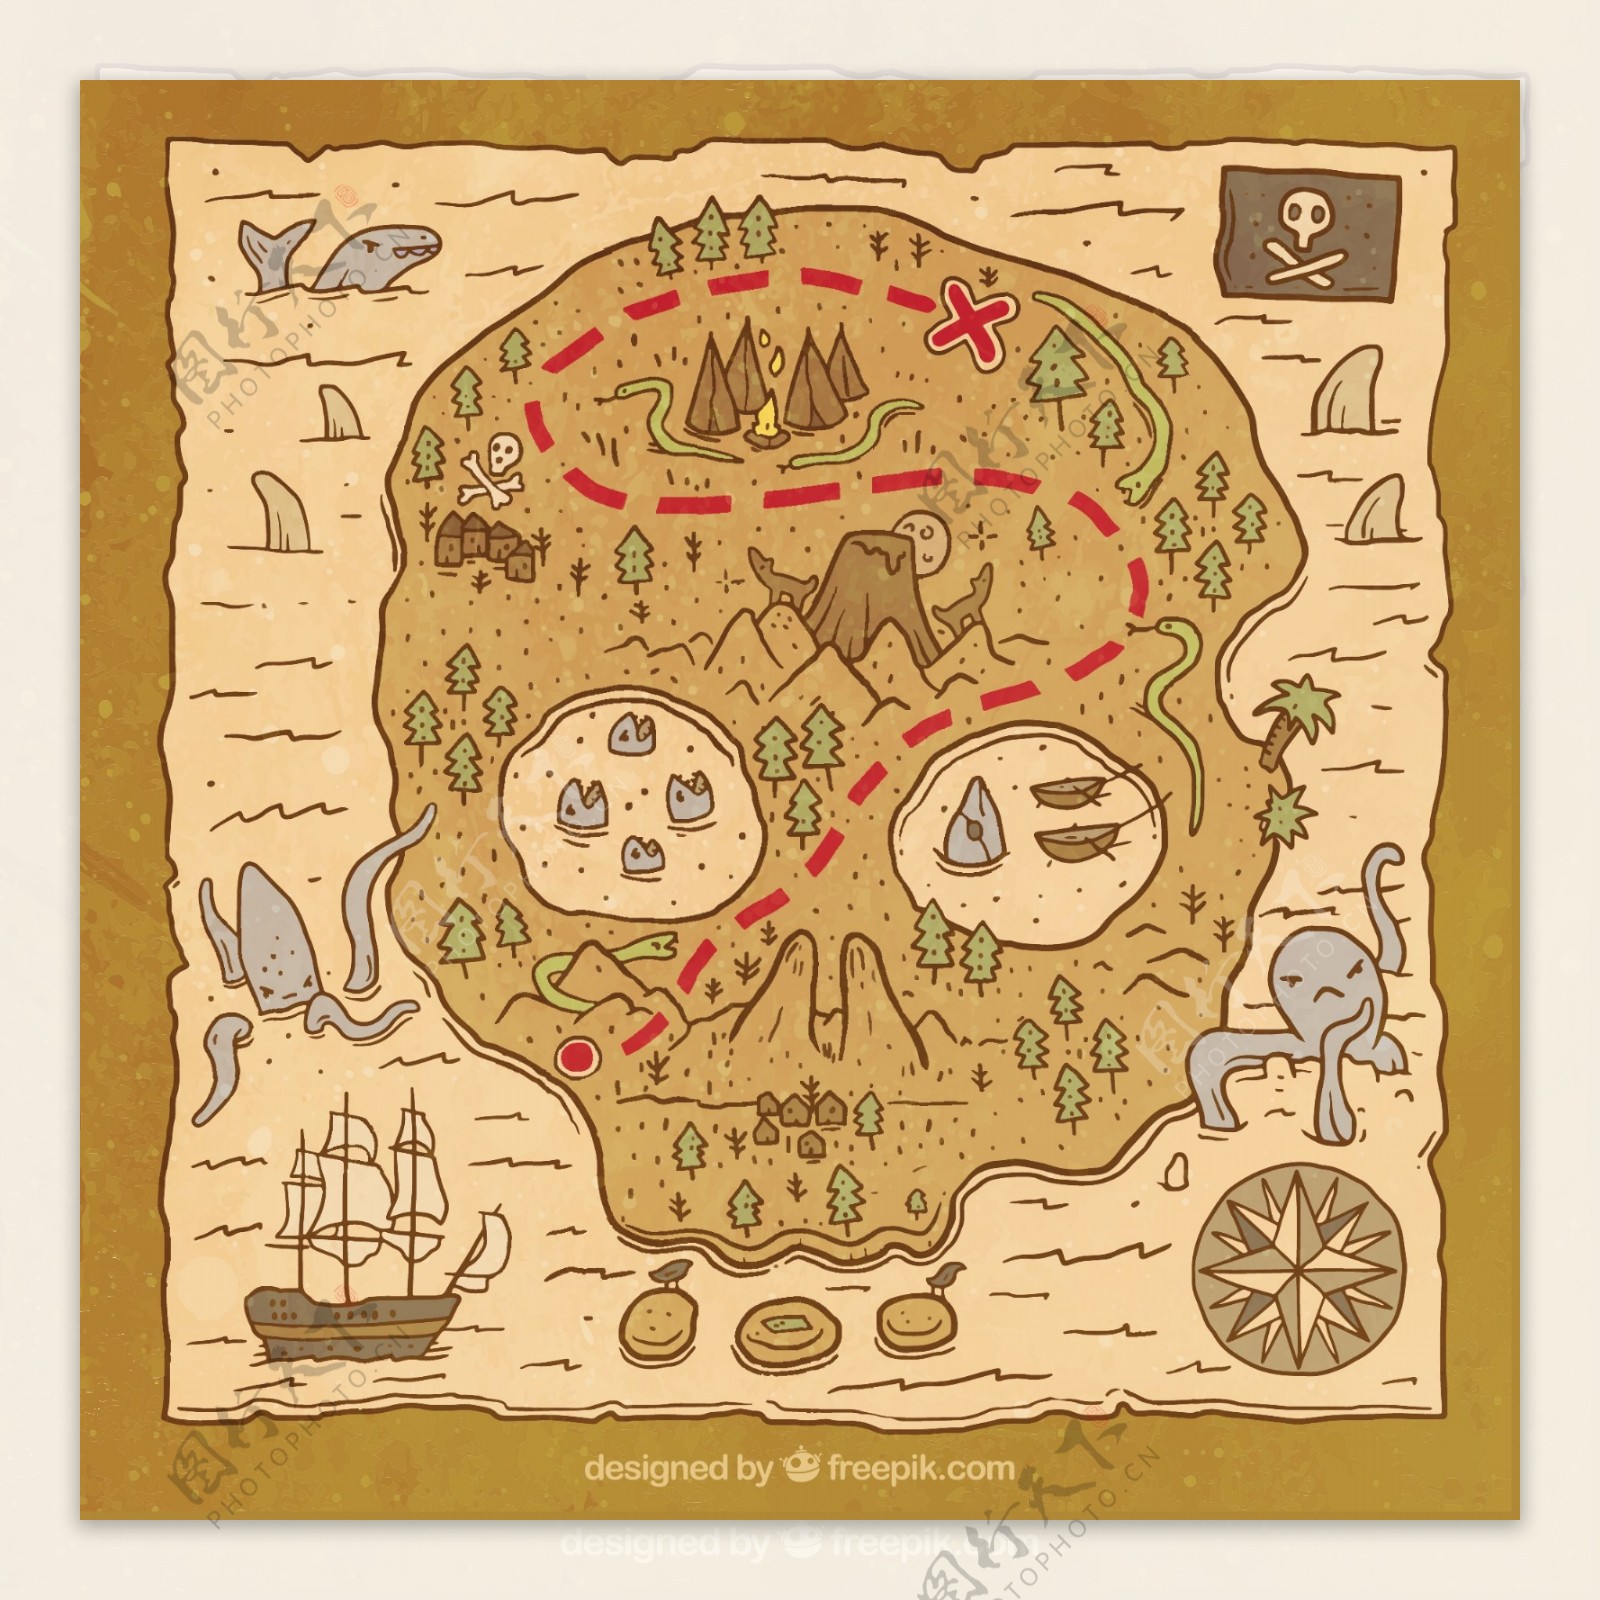 复古风格海盗船地图背景平面设计素材